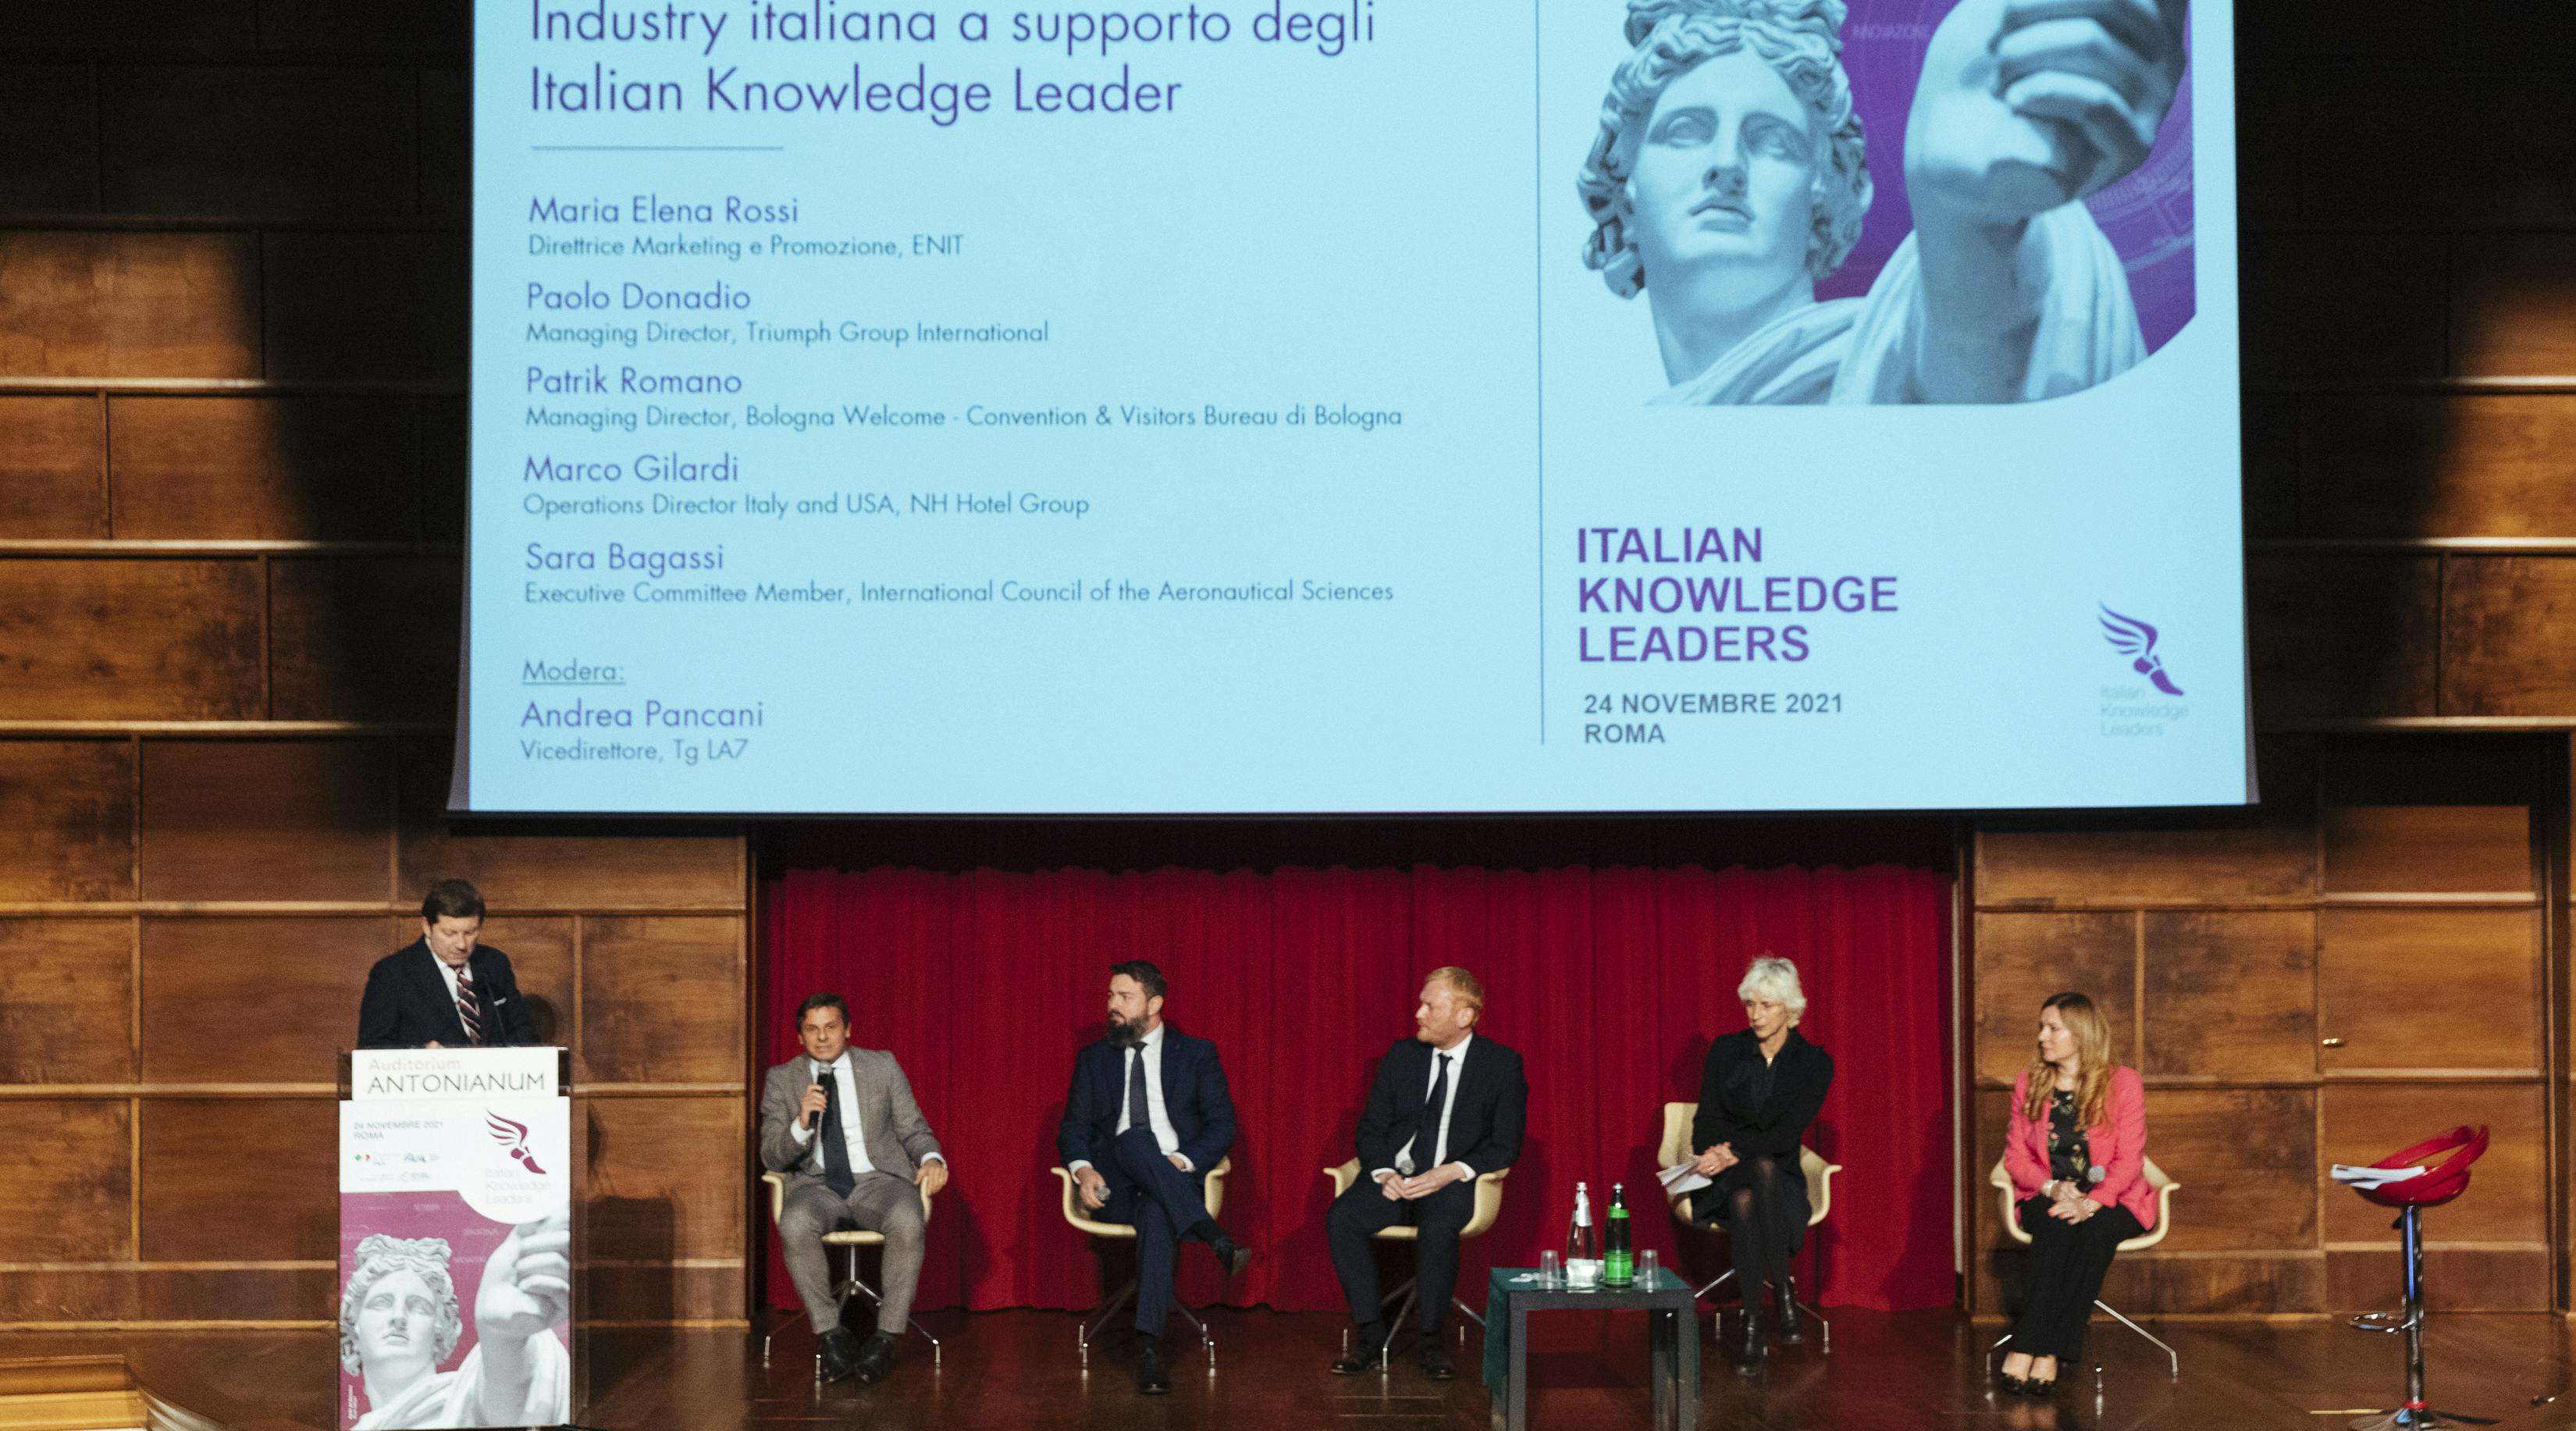 Italian Knowledge Leaders